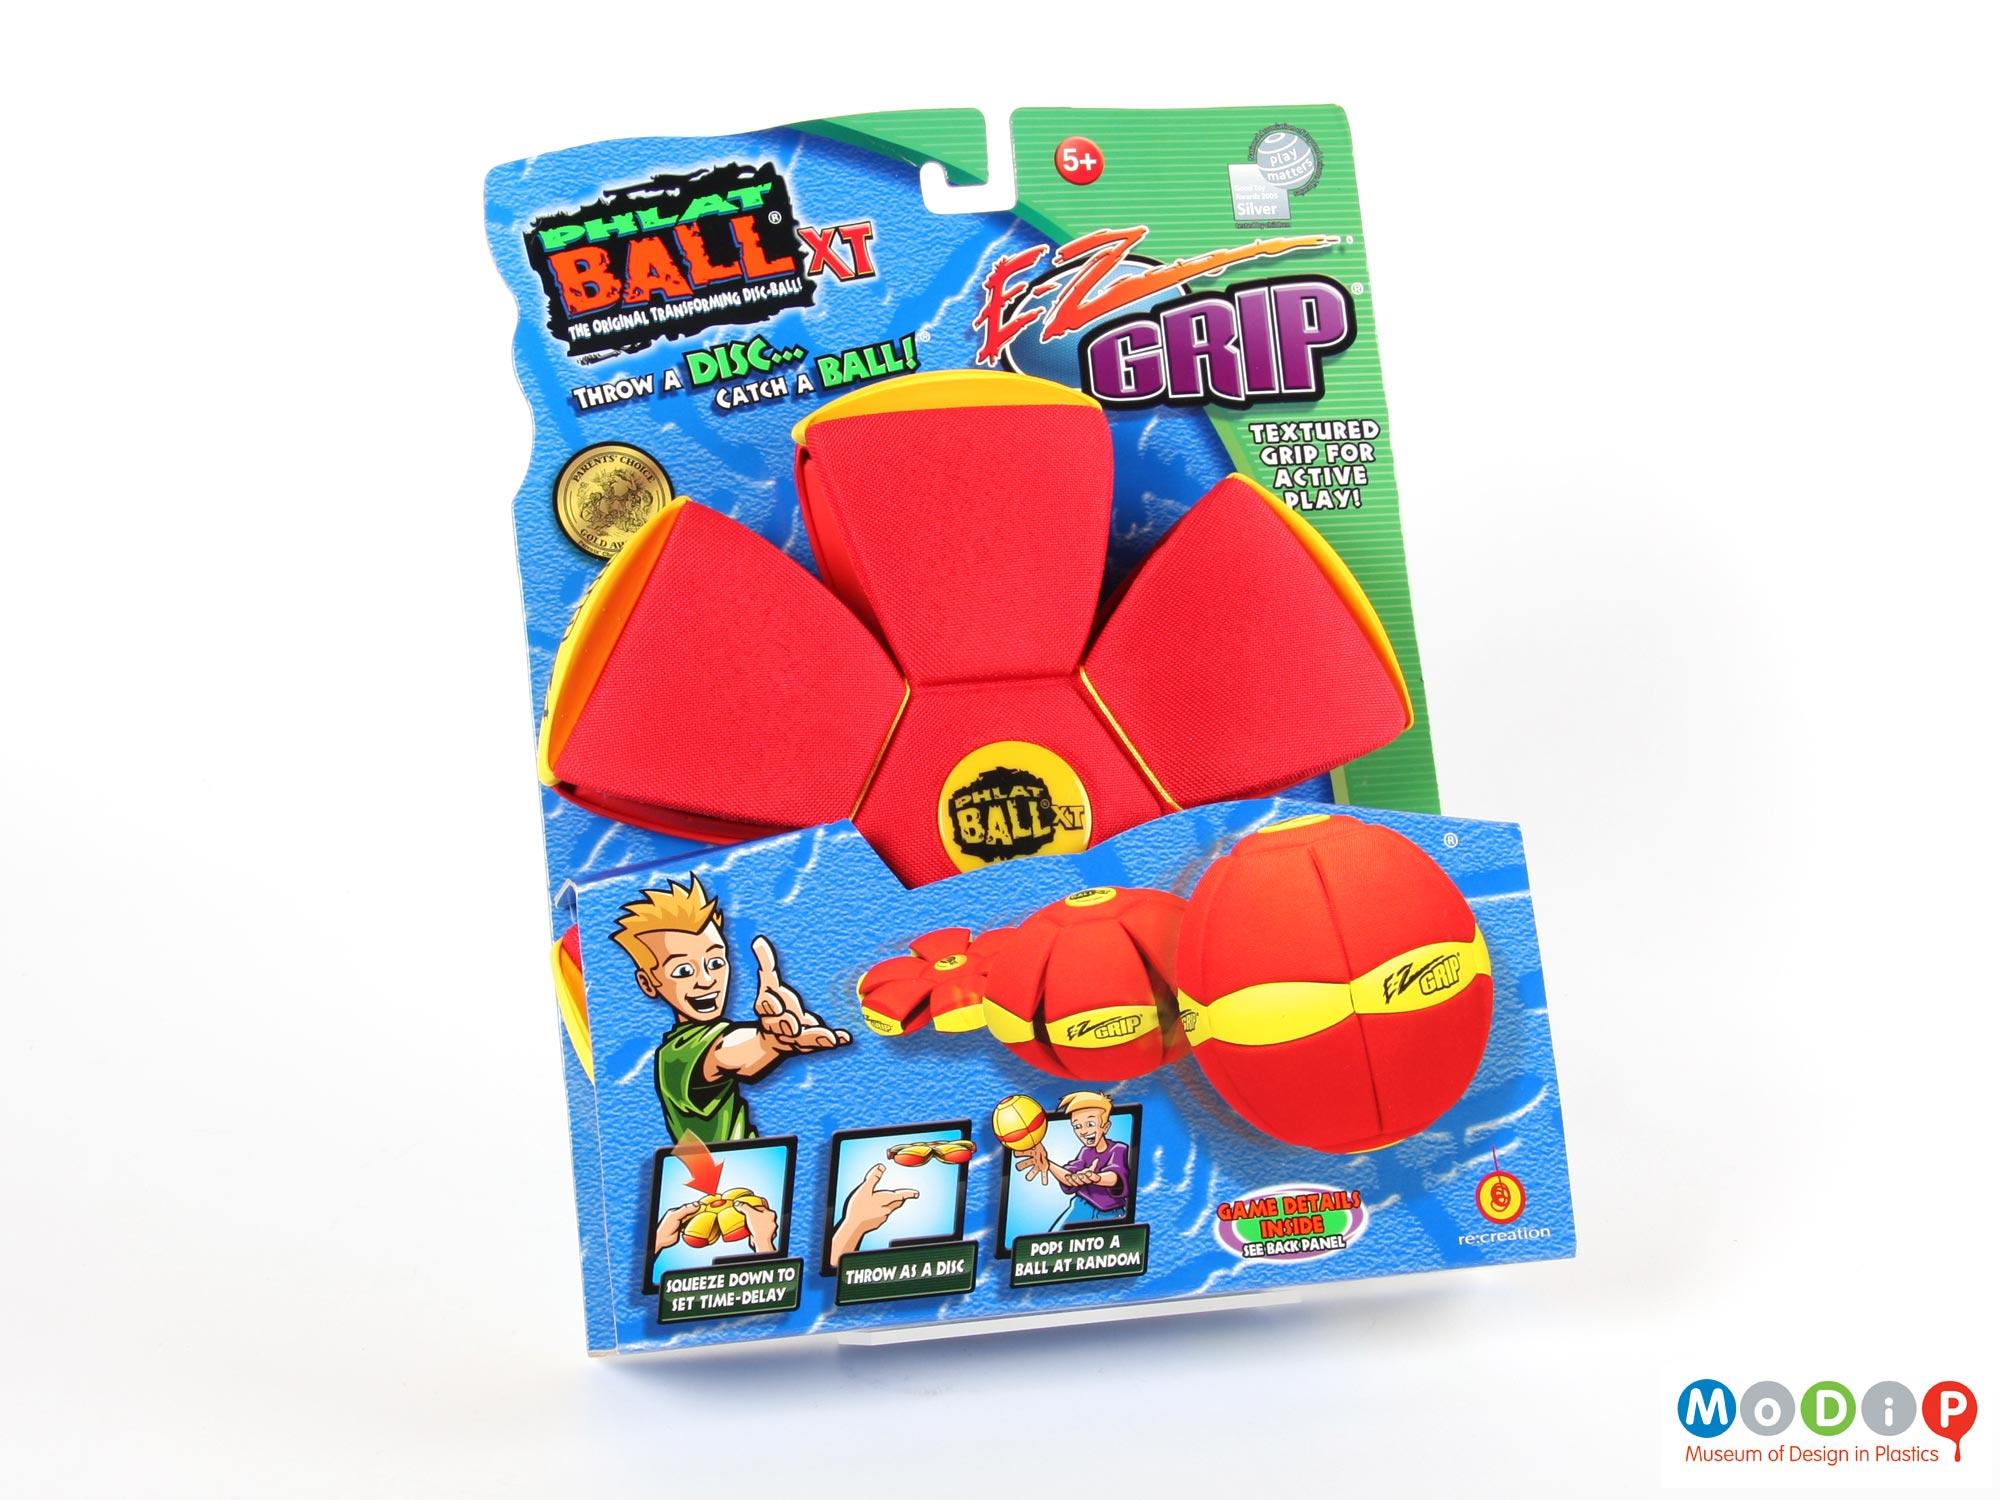 E-Z Grip Phlat ball XT | Museum of Design in Plastics